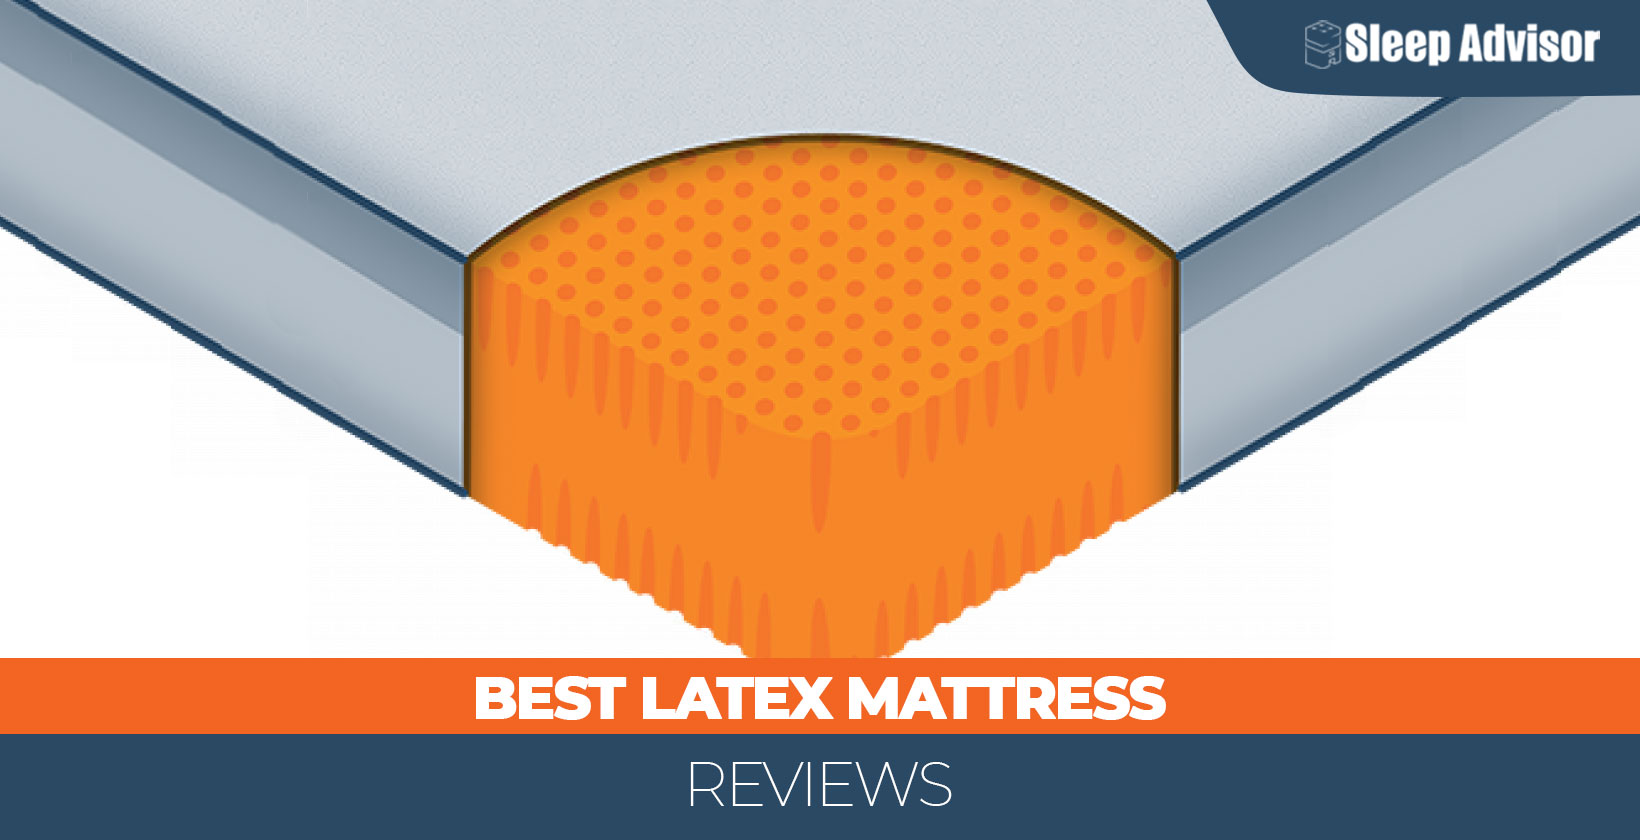 Best Latex Mattress 1640 x 840 px